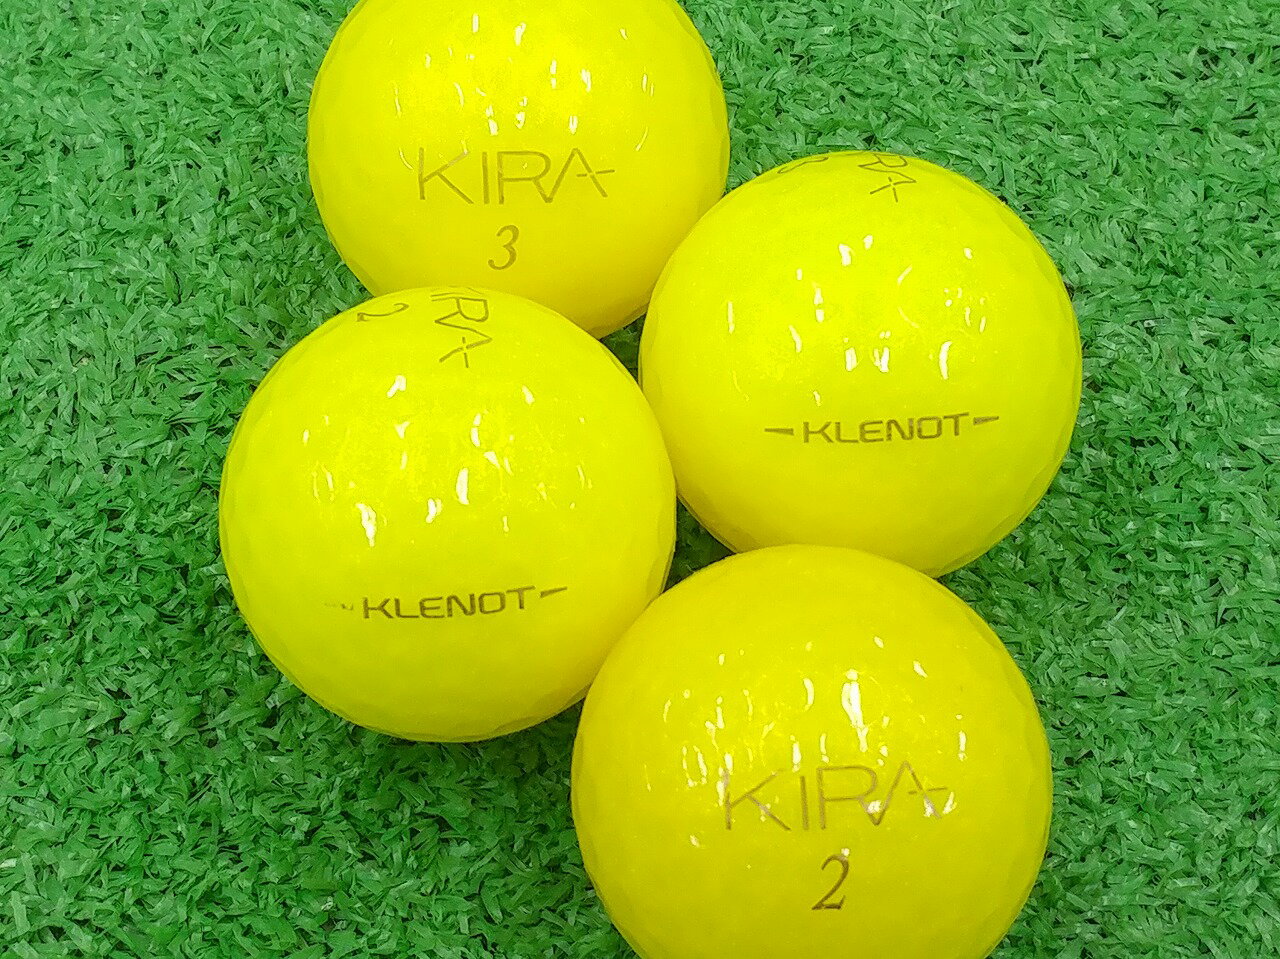 【中古】【ABランク】【ロゴなし】キャスコ KIRA KLENOT 2014年モデル イエローダイヤモンド 30個セット ロストボール ゴルフボール